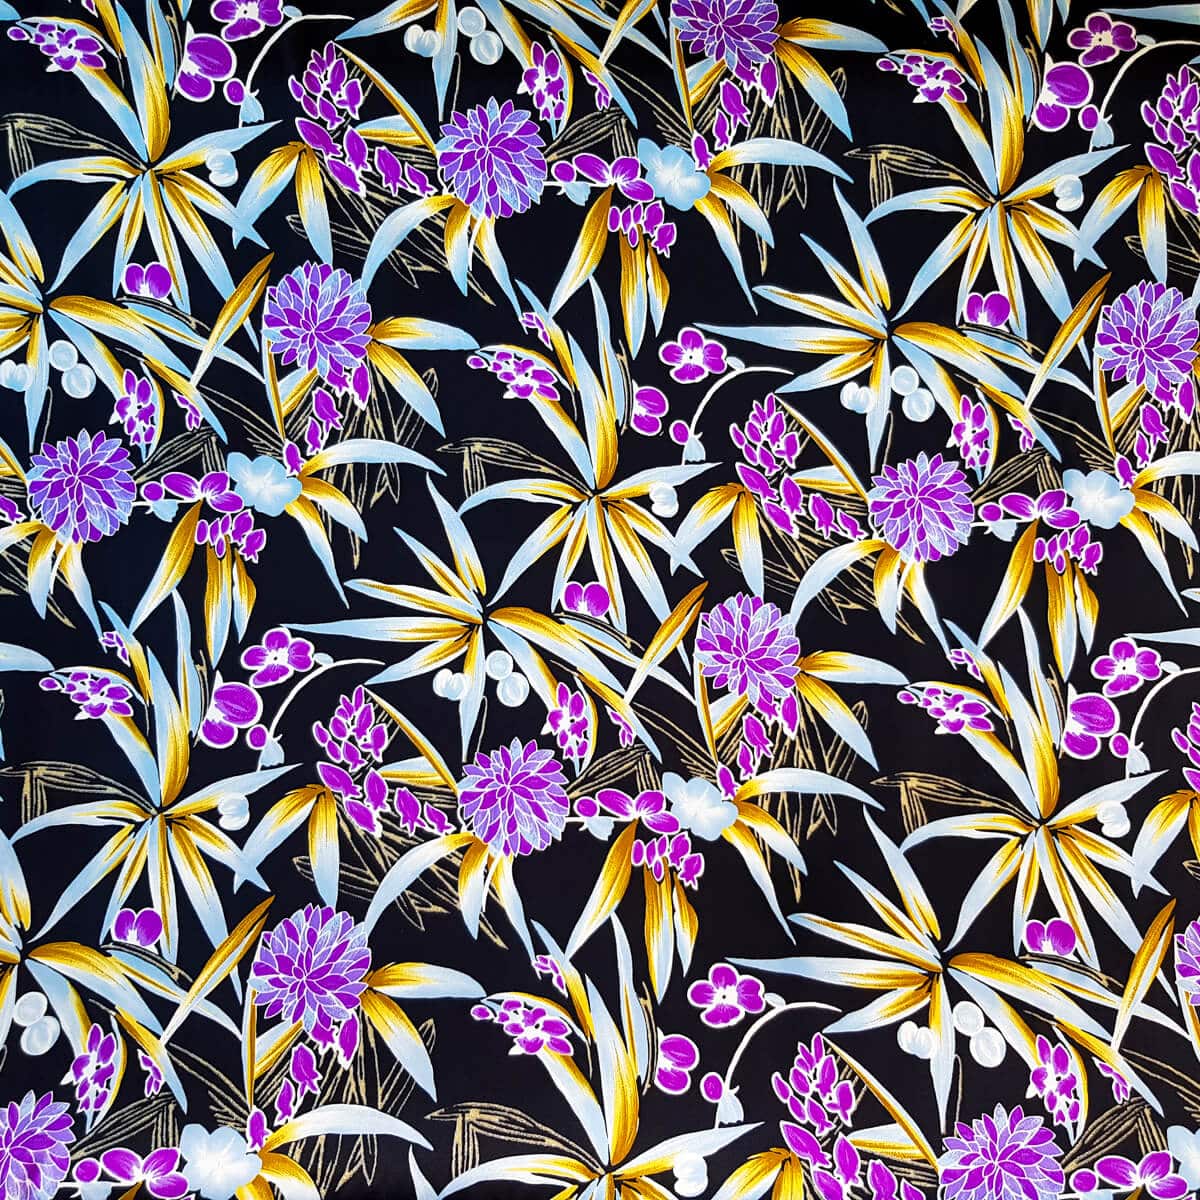 jedwab naturalny w kwiaty fioletowe na czerni satynaD